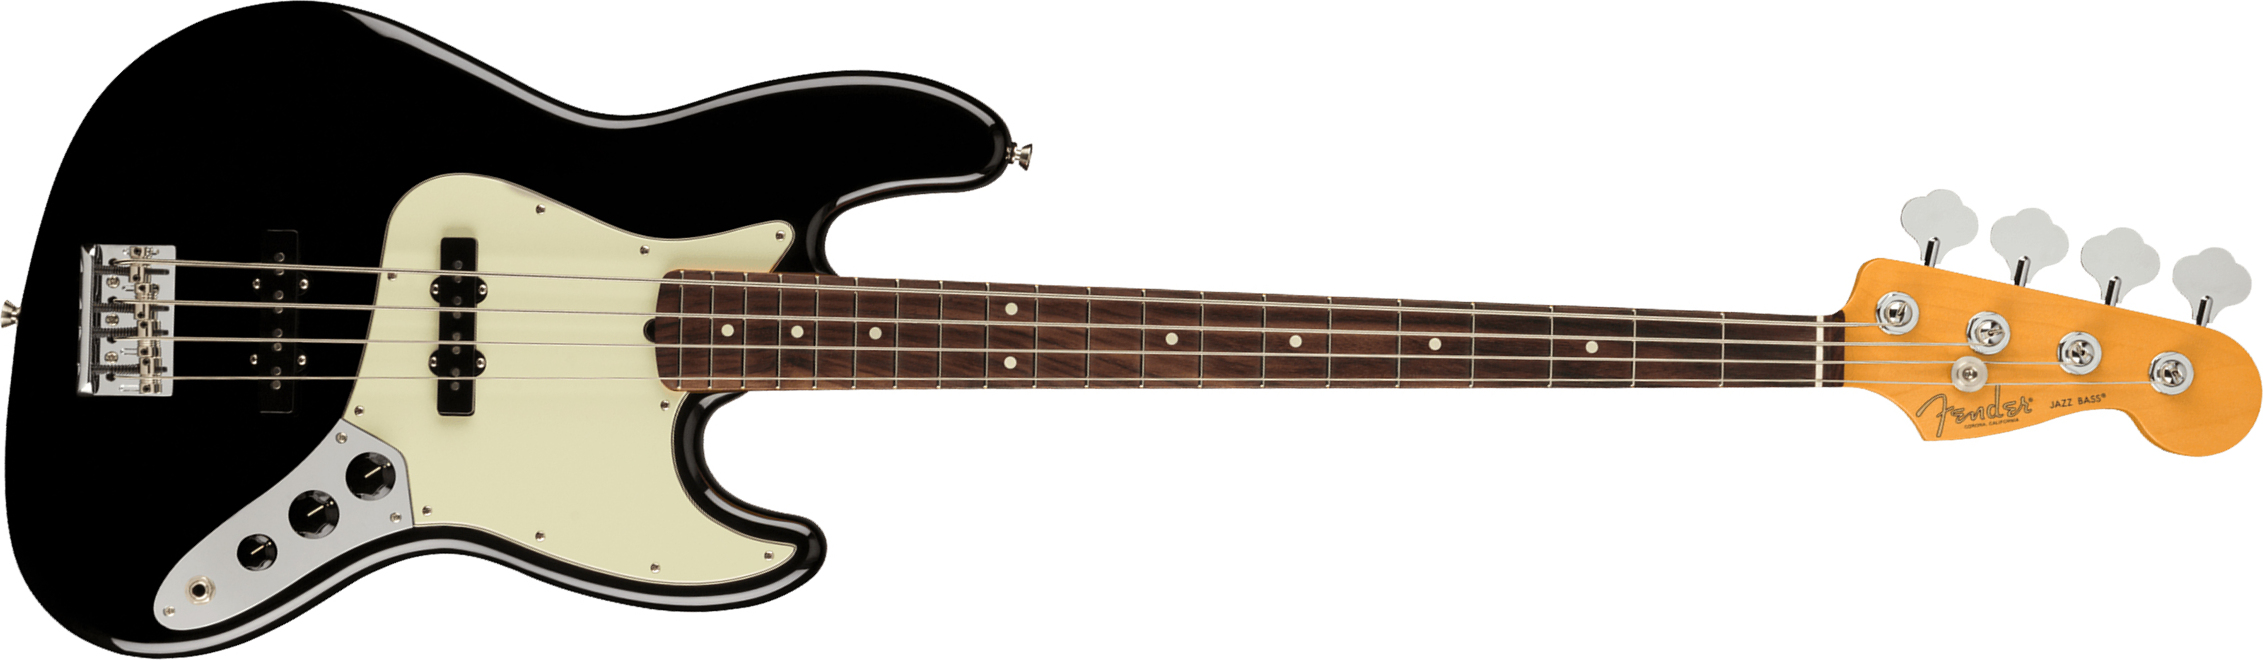 Fender Jazz Bass American Professional Ii Usa Rw - Black - Bajo eléctrico de cuerpo sólido - Main picture